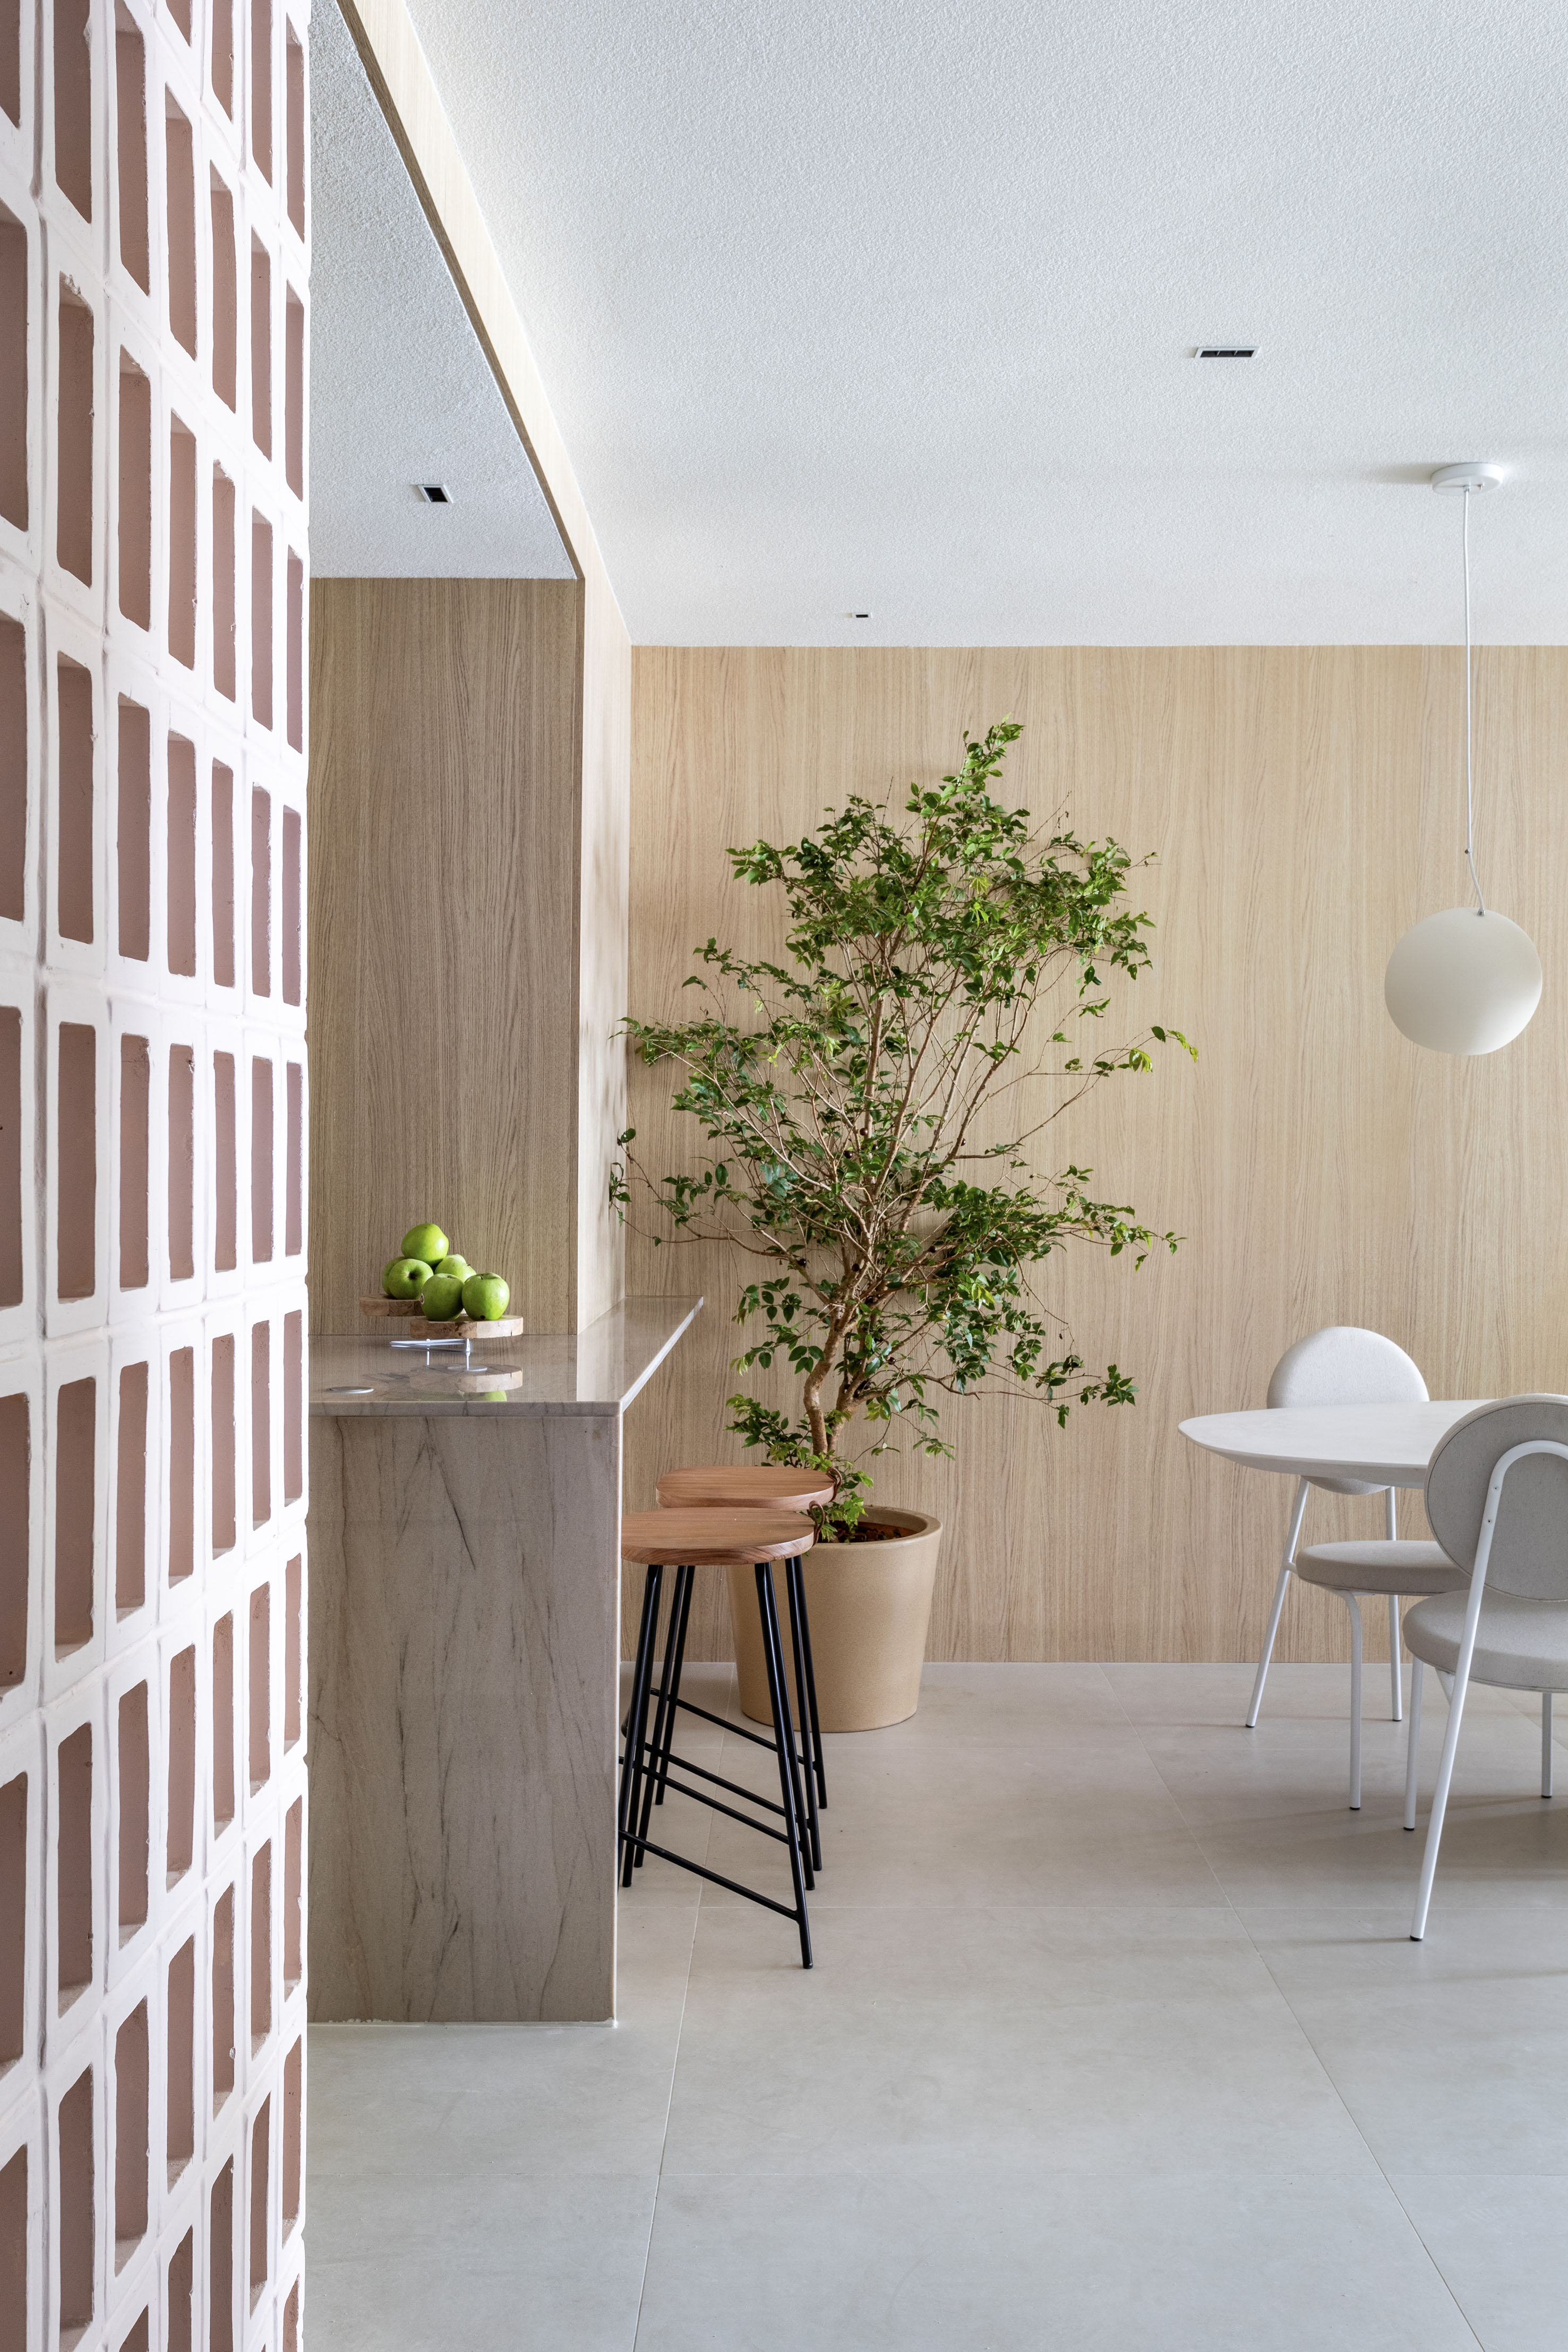 Japandi: apê de 110 m² tem décor delicado em tons de branco, rosa e cinza. Projeto de Up3 Arquitetura. Na foto, sala de estar minimalista, parede revestida de madeira clara, árvore.